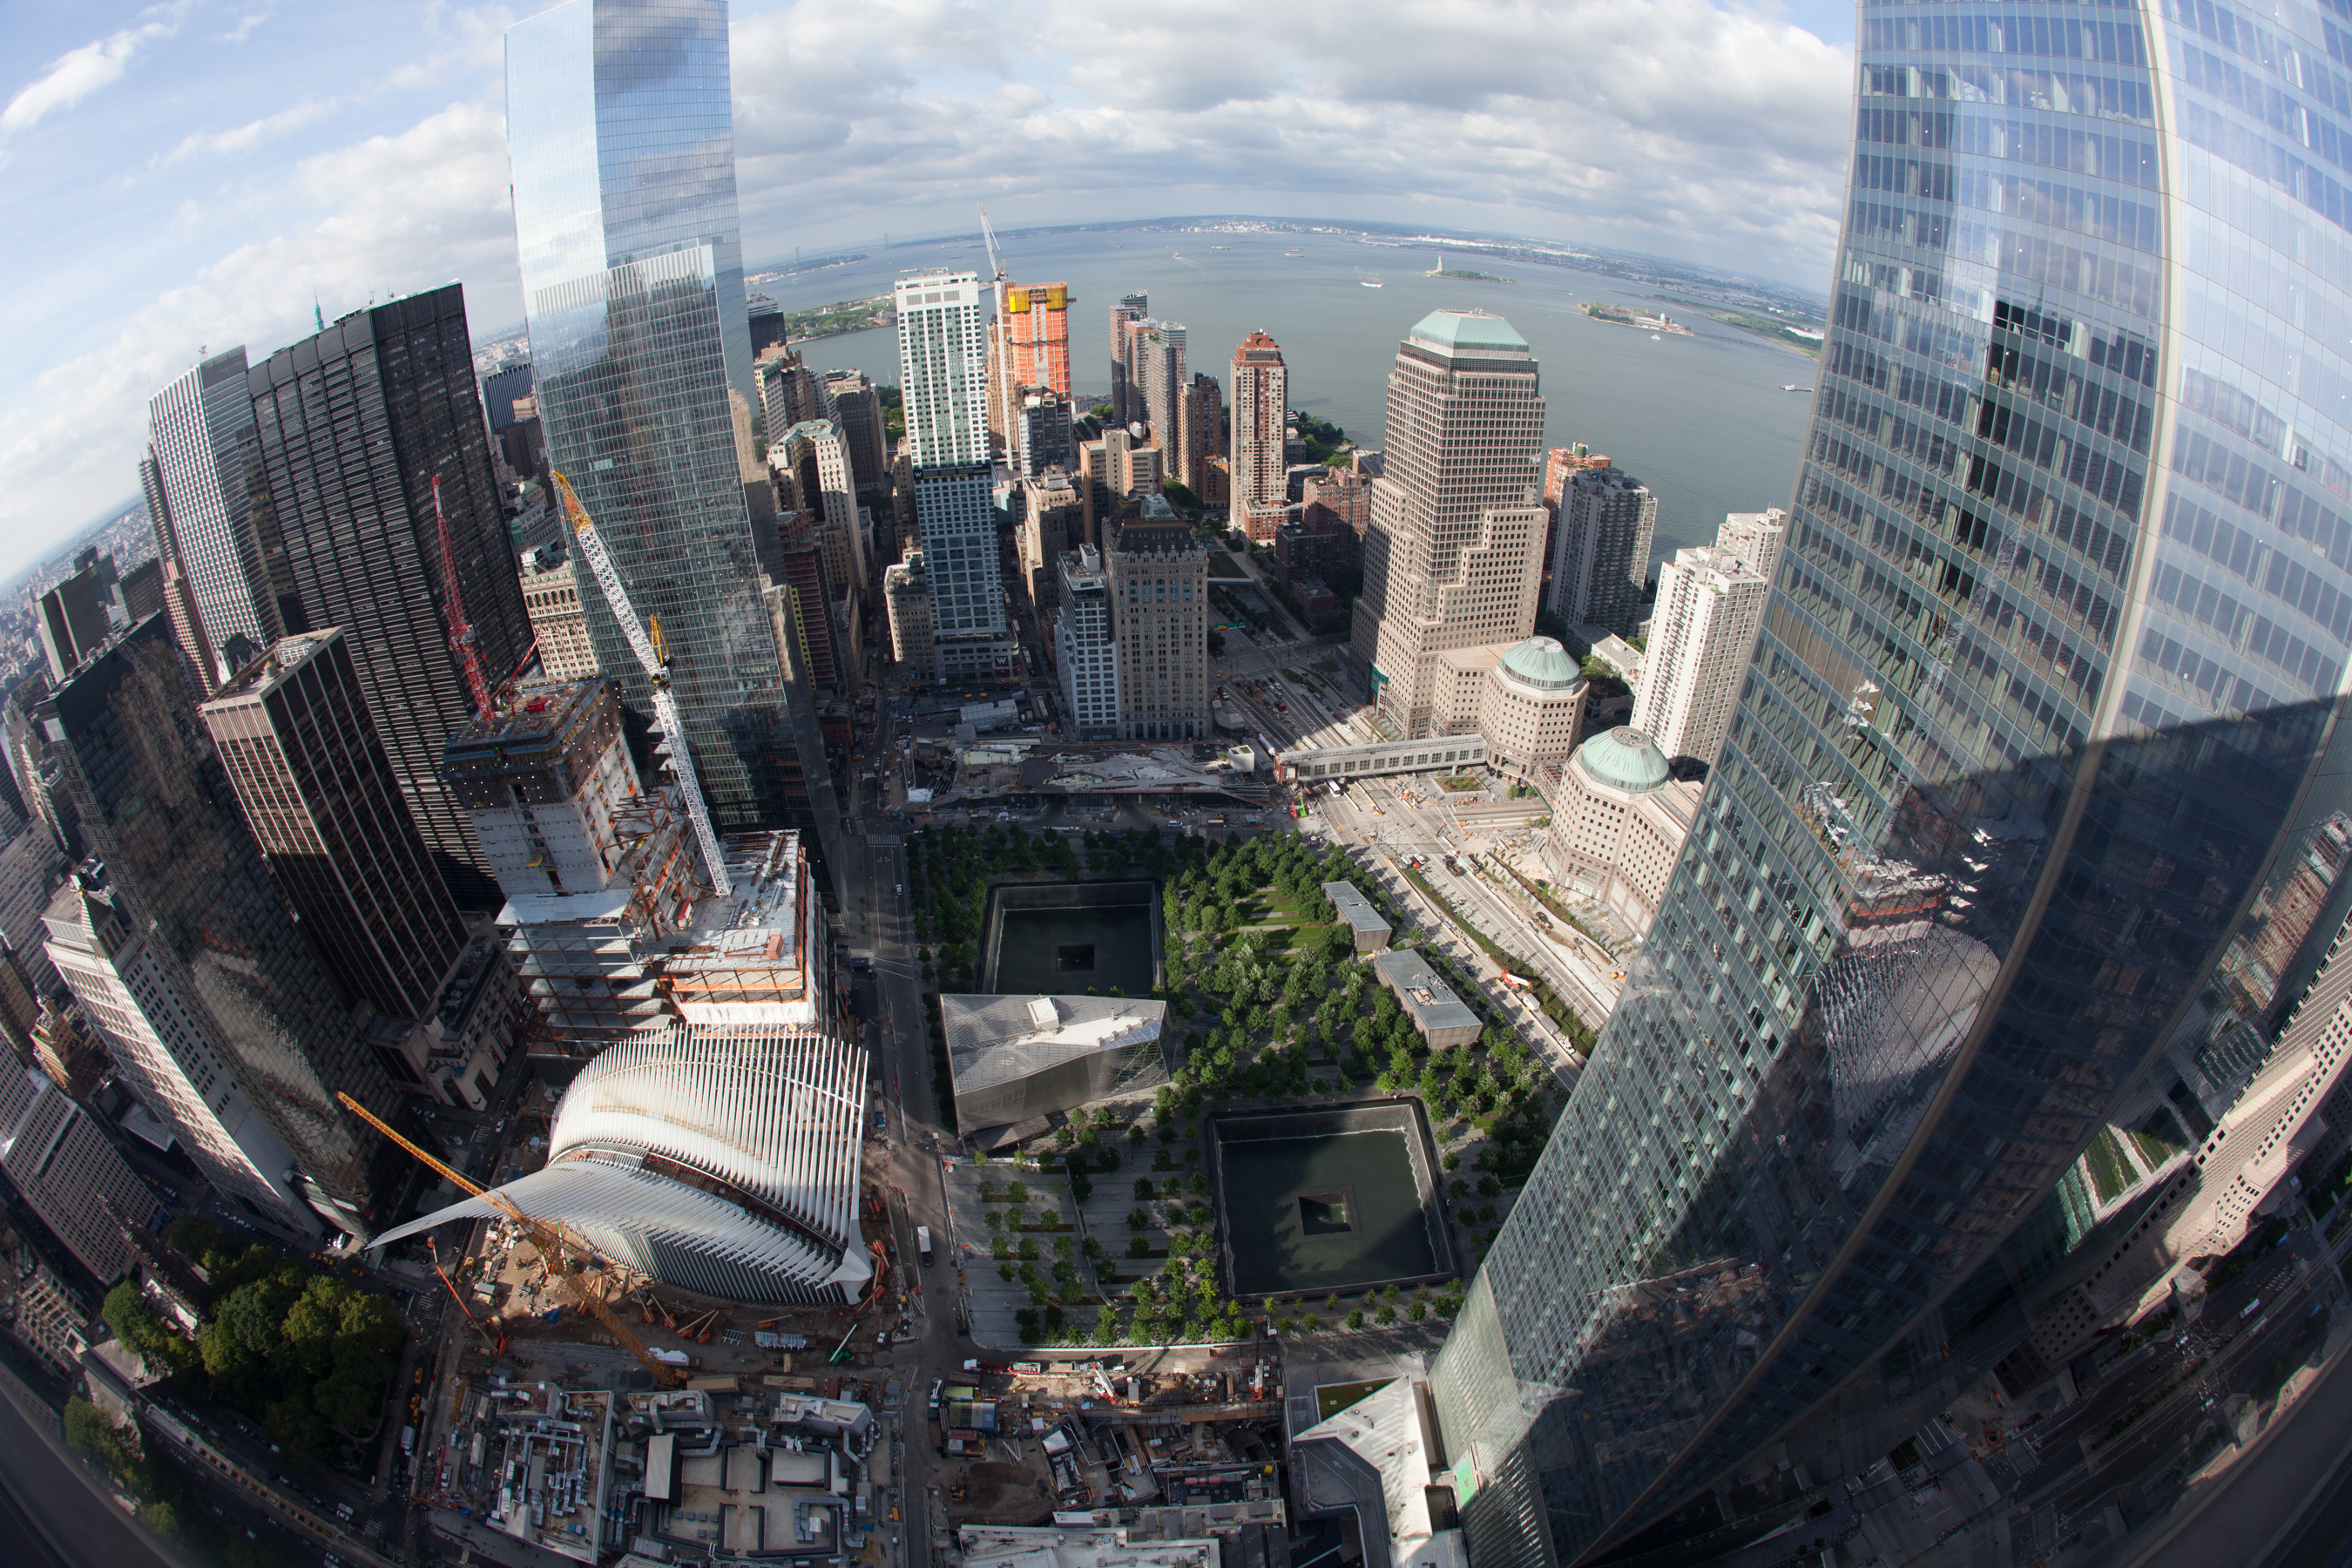 WTC Plaza